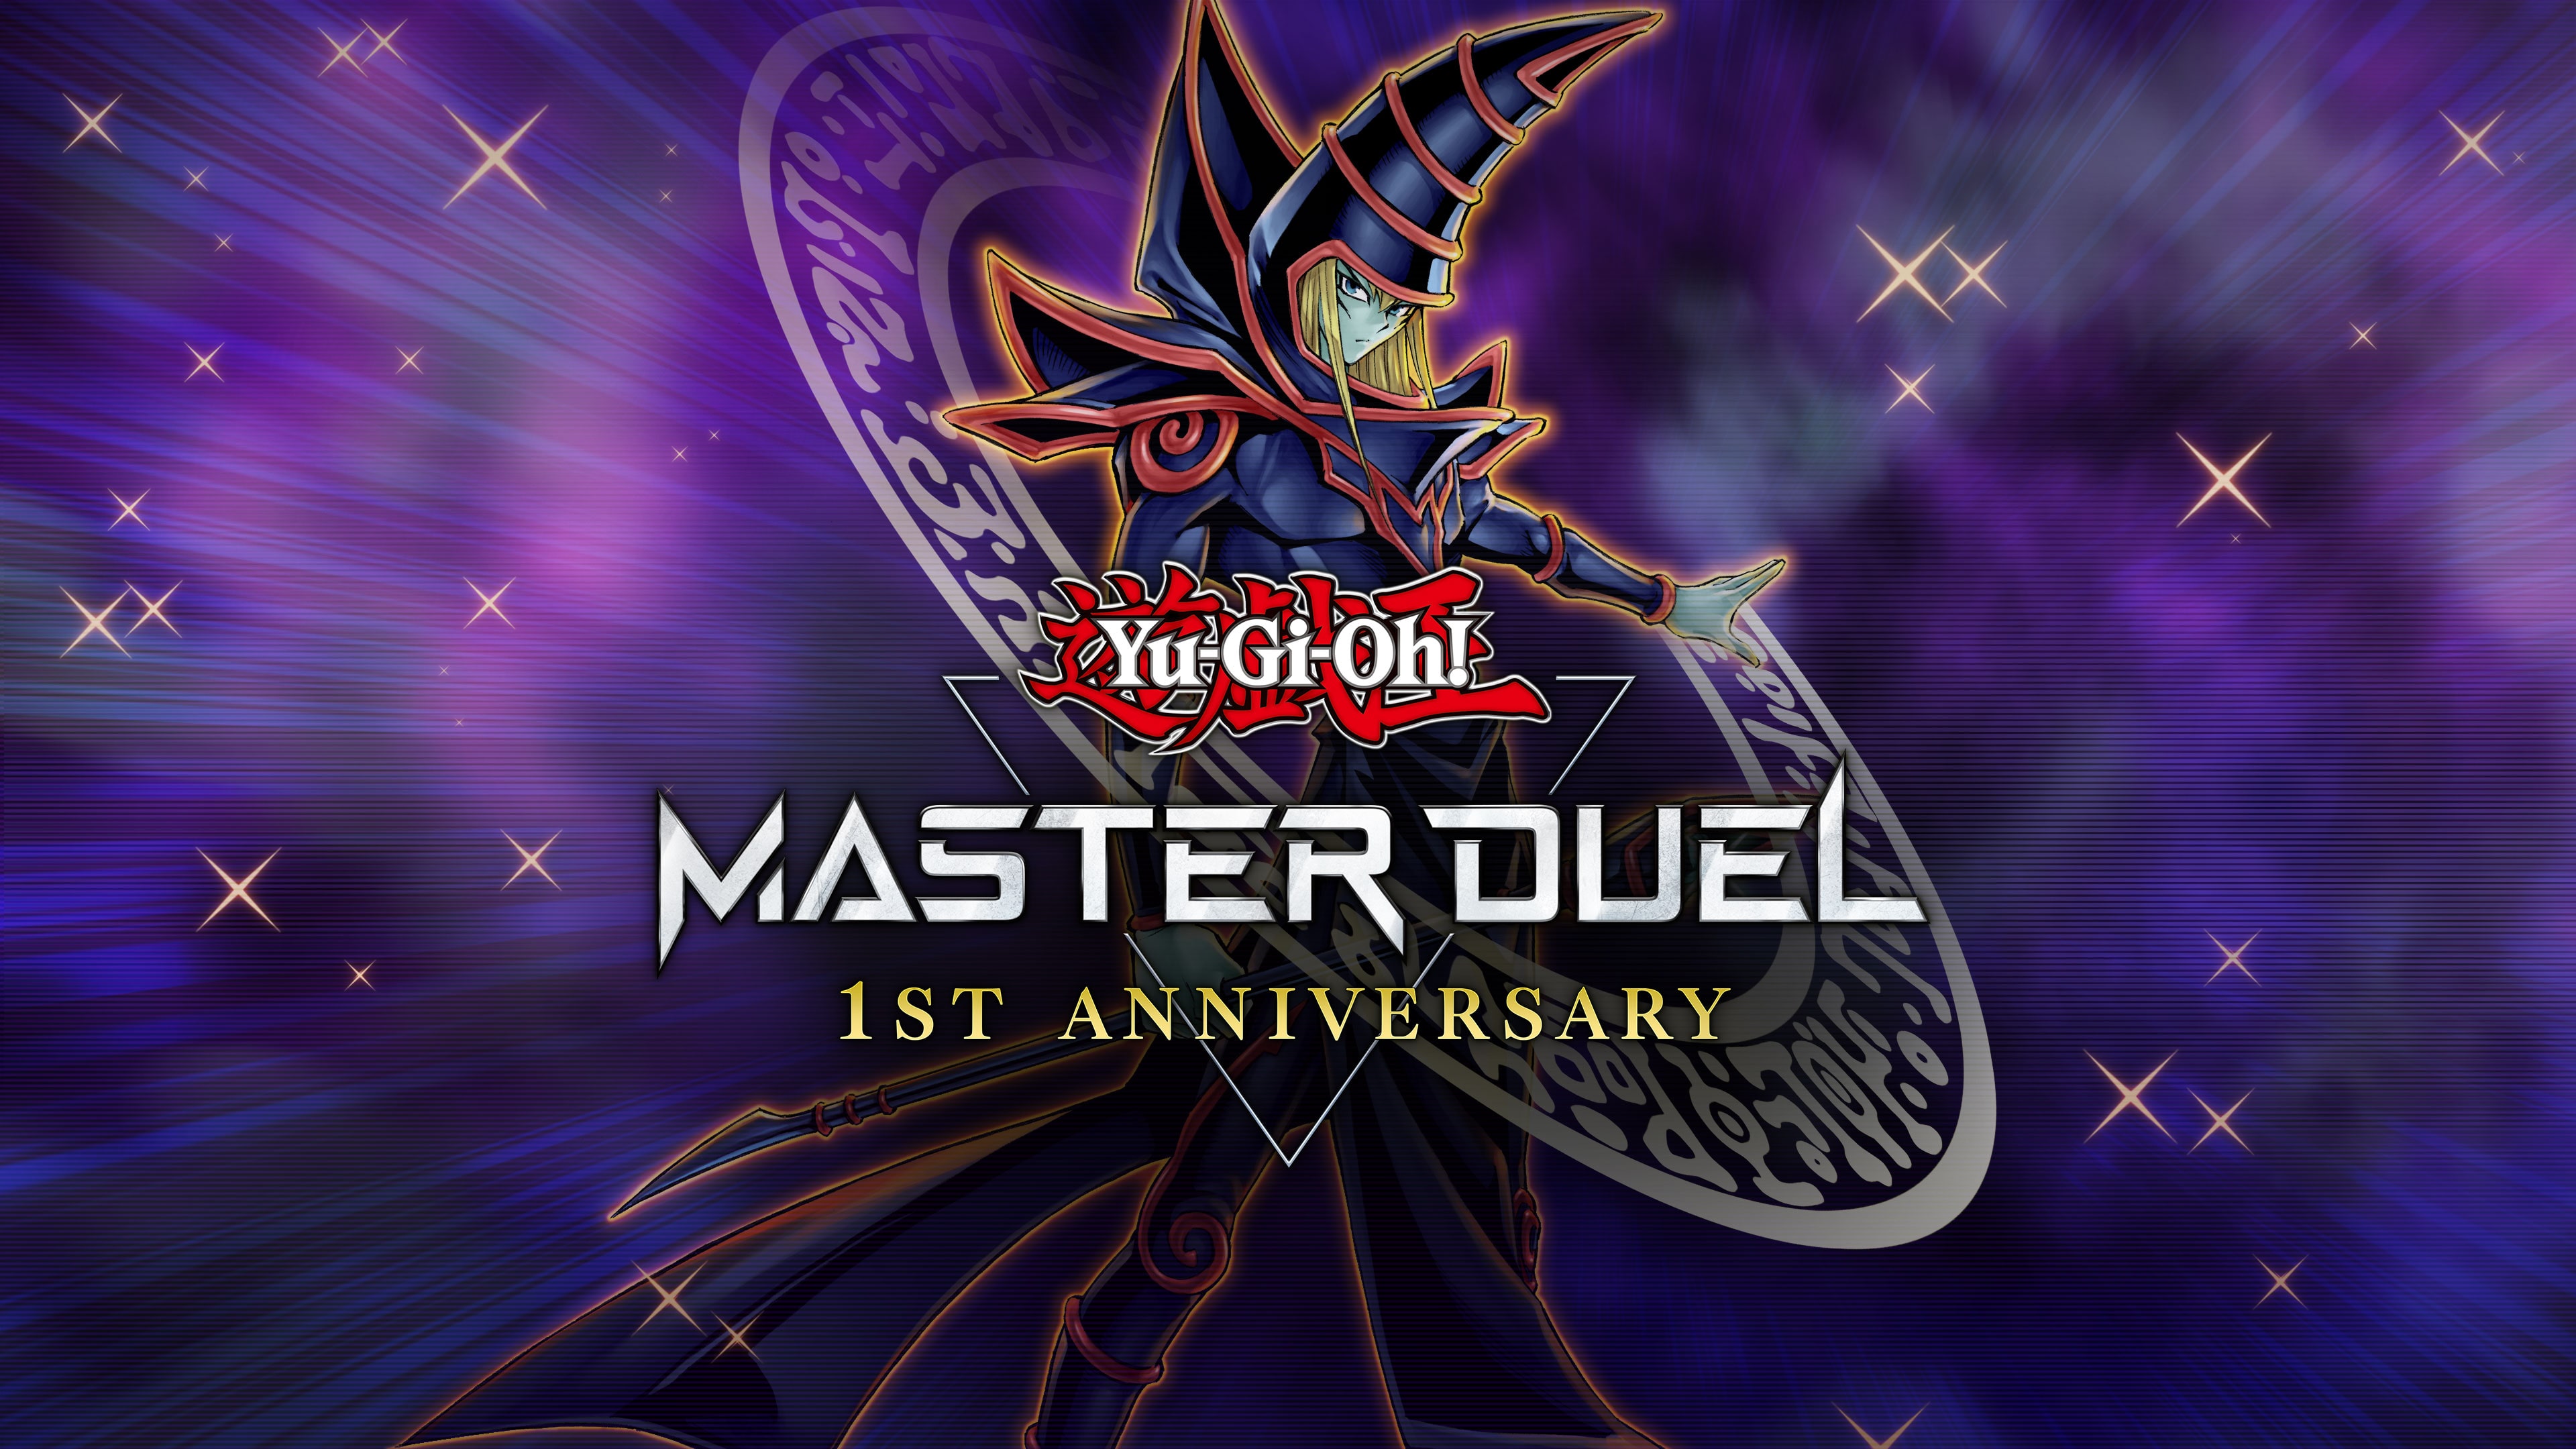 Yu-Gi-Oh! MASTER DUEL (English, Korean, Japanese)